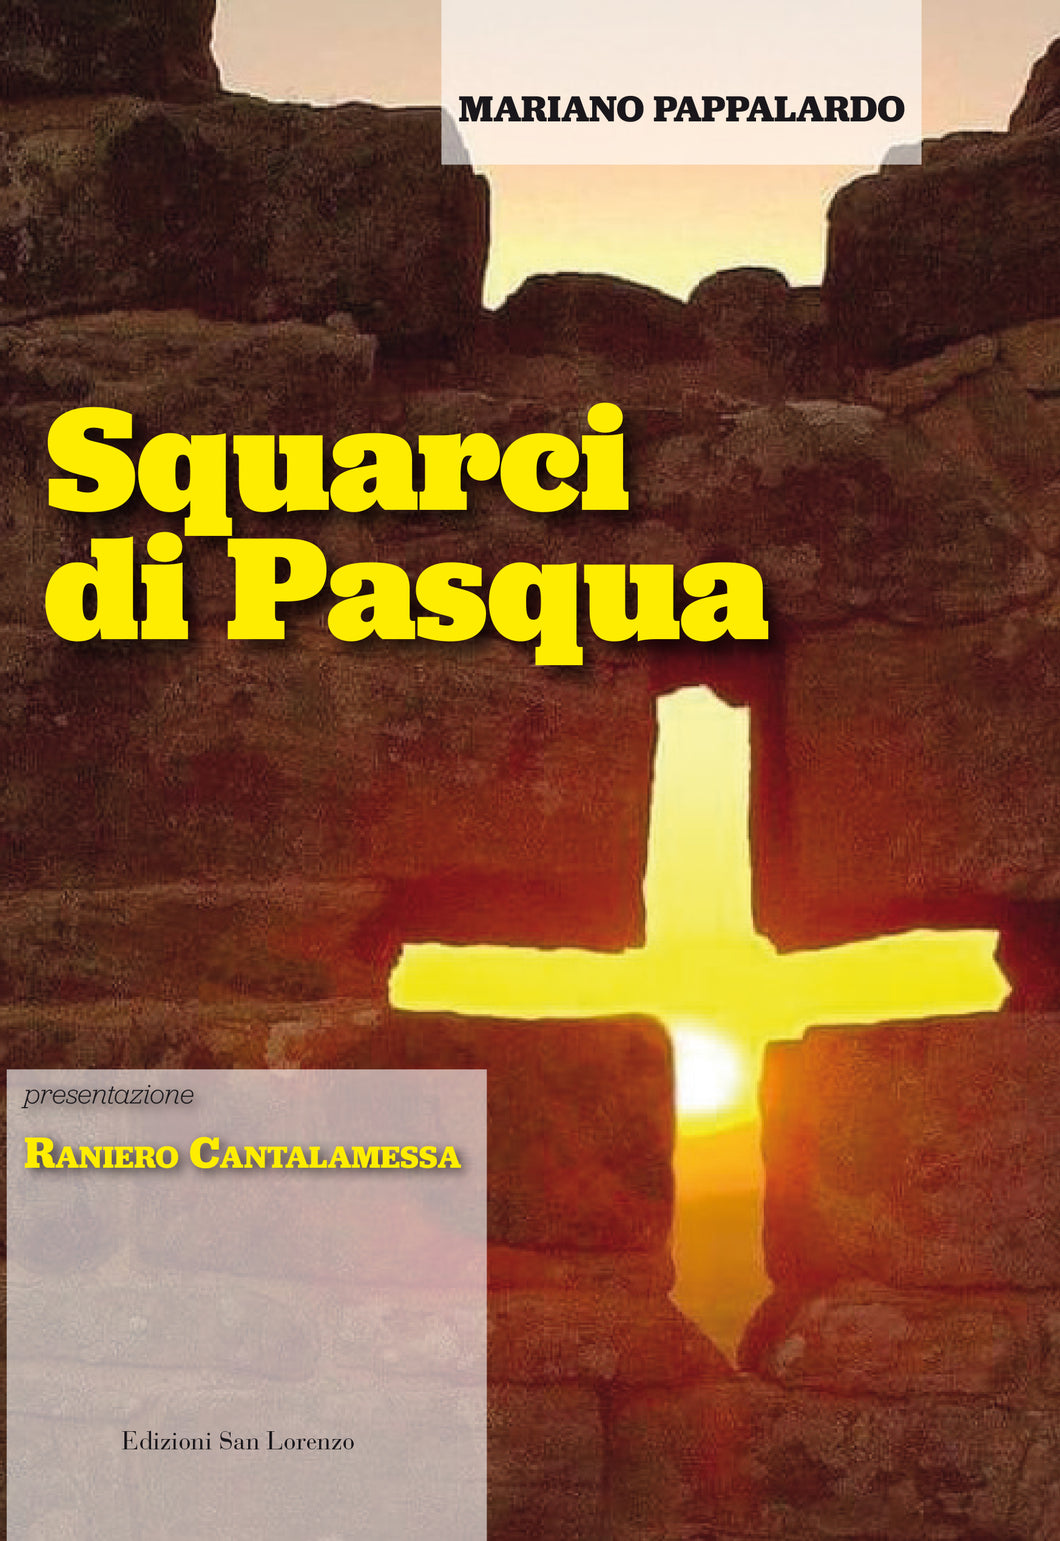 SQUARCI DI PASQUA di Mariano Pappalardo - (pres.) card. Raniero Cantalamessa - Edizioni San Lorenzo